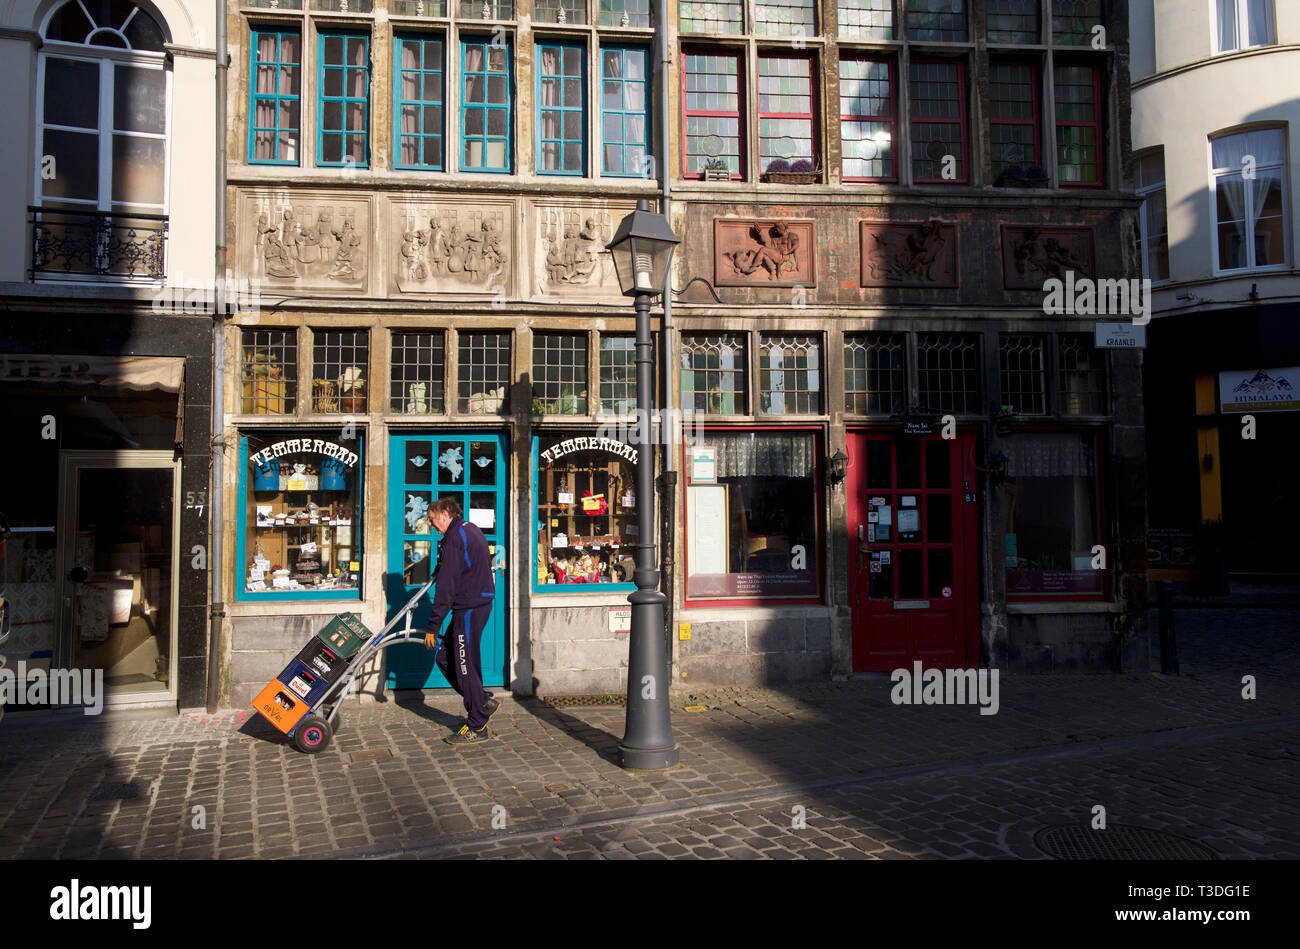 Bâtiments traditionnels dans la vieille ville, Gand, Belgique Banque D'Images